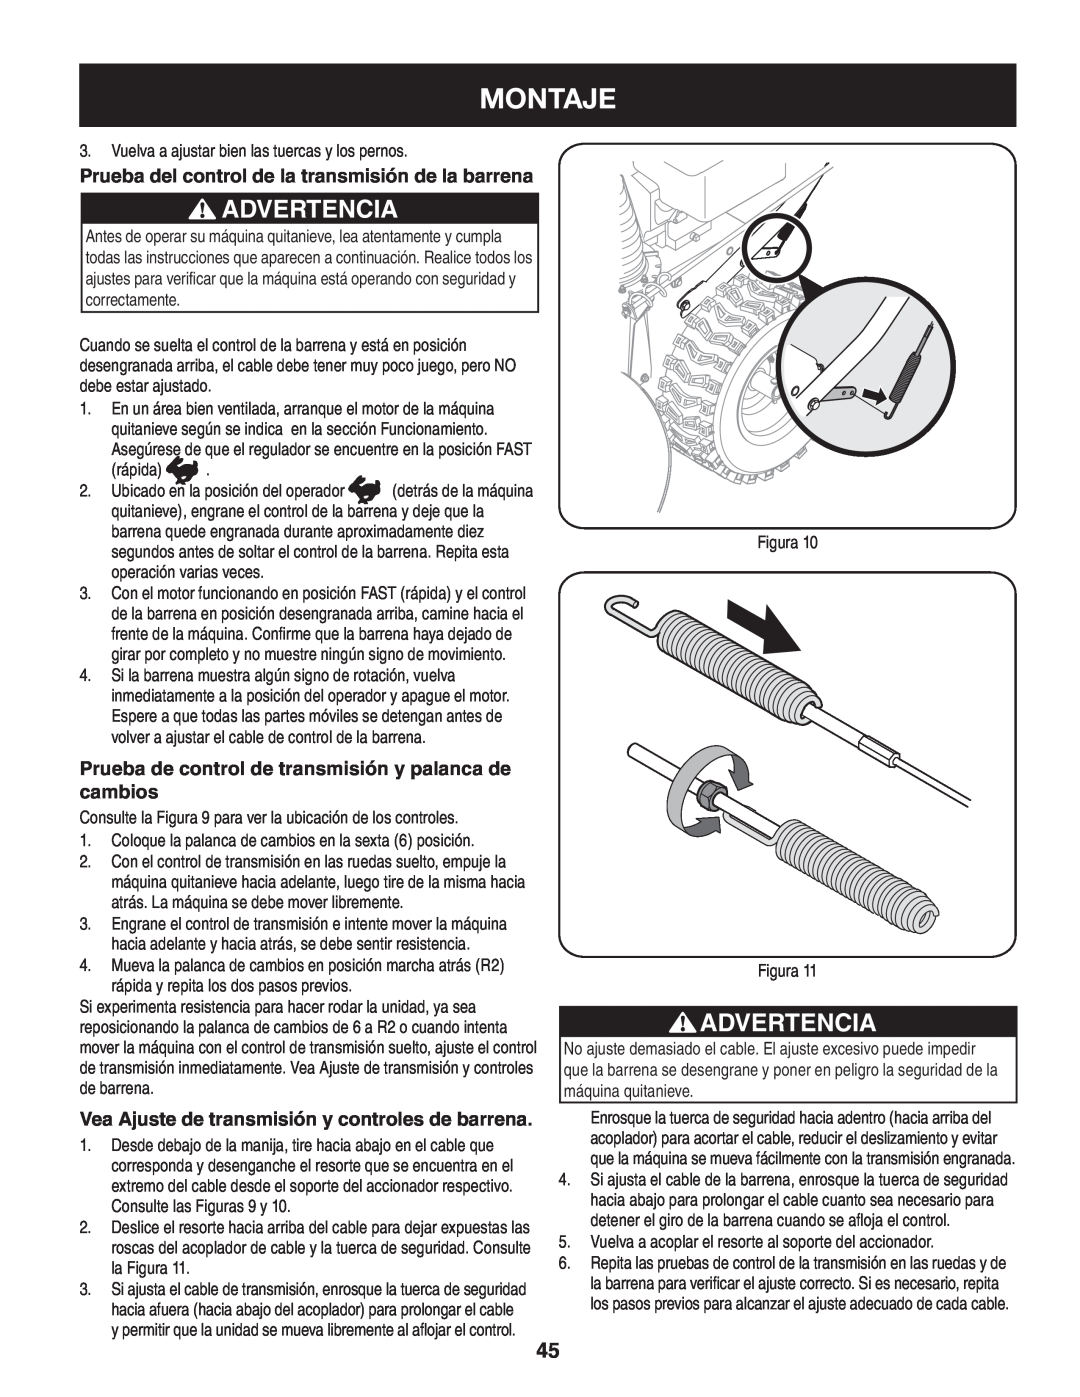 Craftsman 247.88045 manual Montaje, Advertencia, Prueba del control de la transmisión de la barrena 